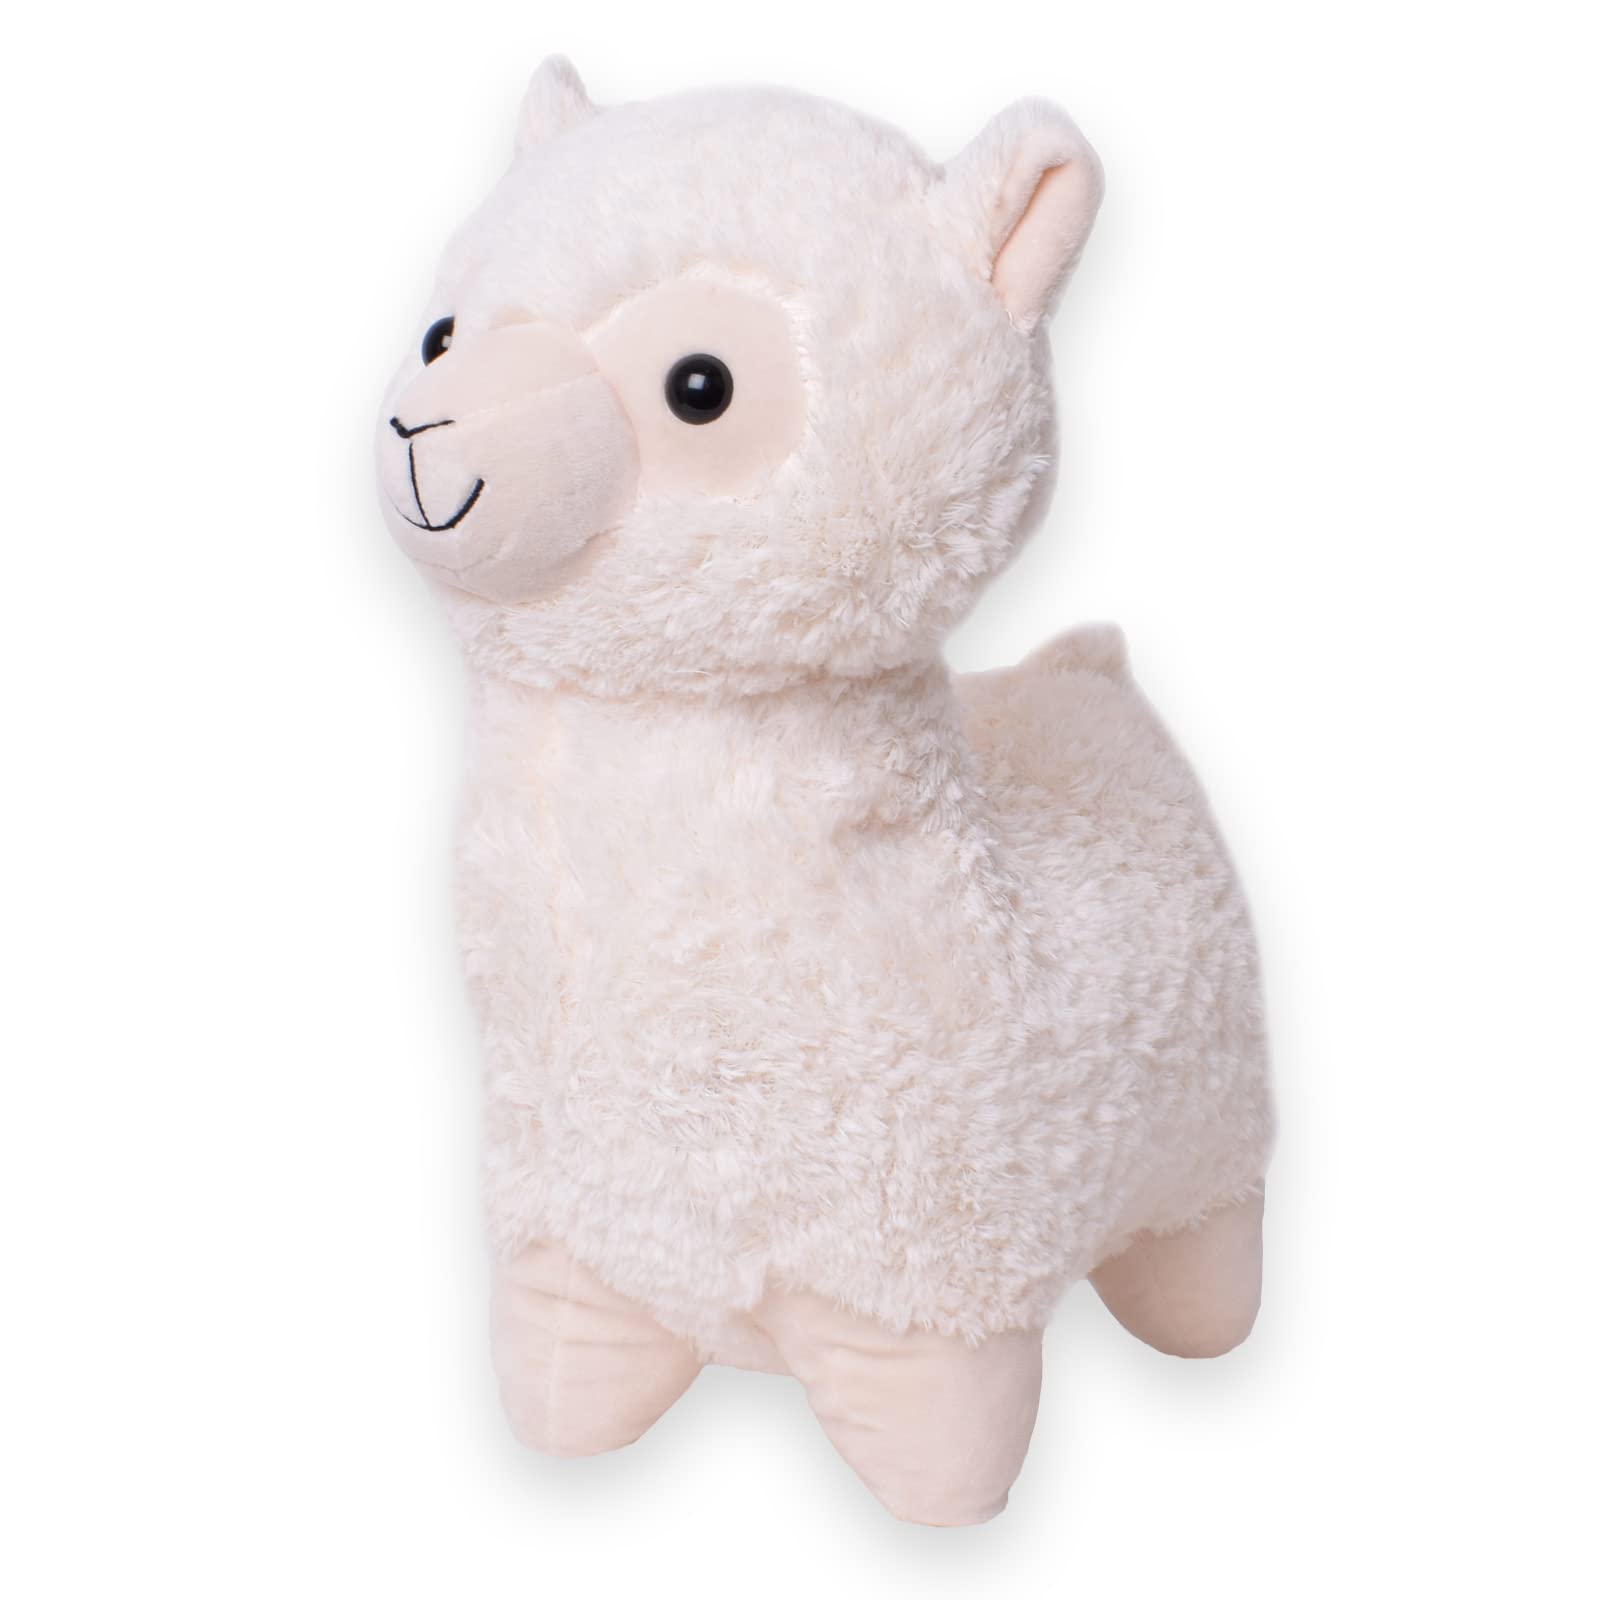 TE-Trend Alpaka Kuscheltier Plüschtier Lama Stofftier Süßes Alpaca Geschenk Mädchen Spielzeug Höhe 42cm Creme Weiß